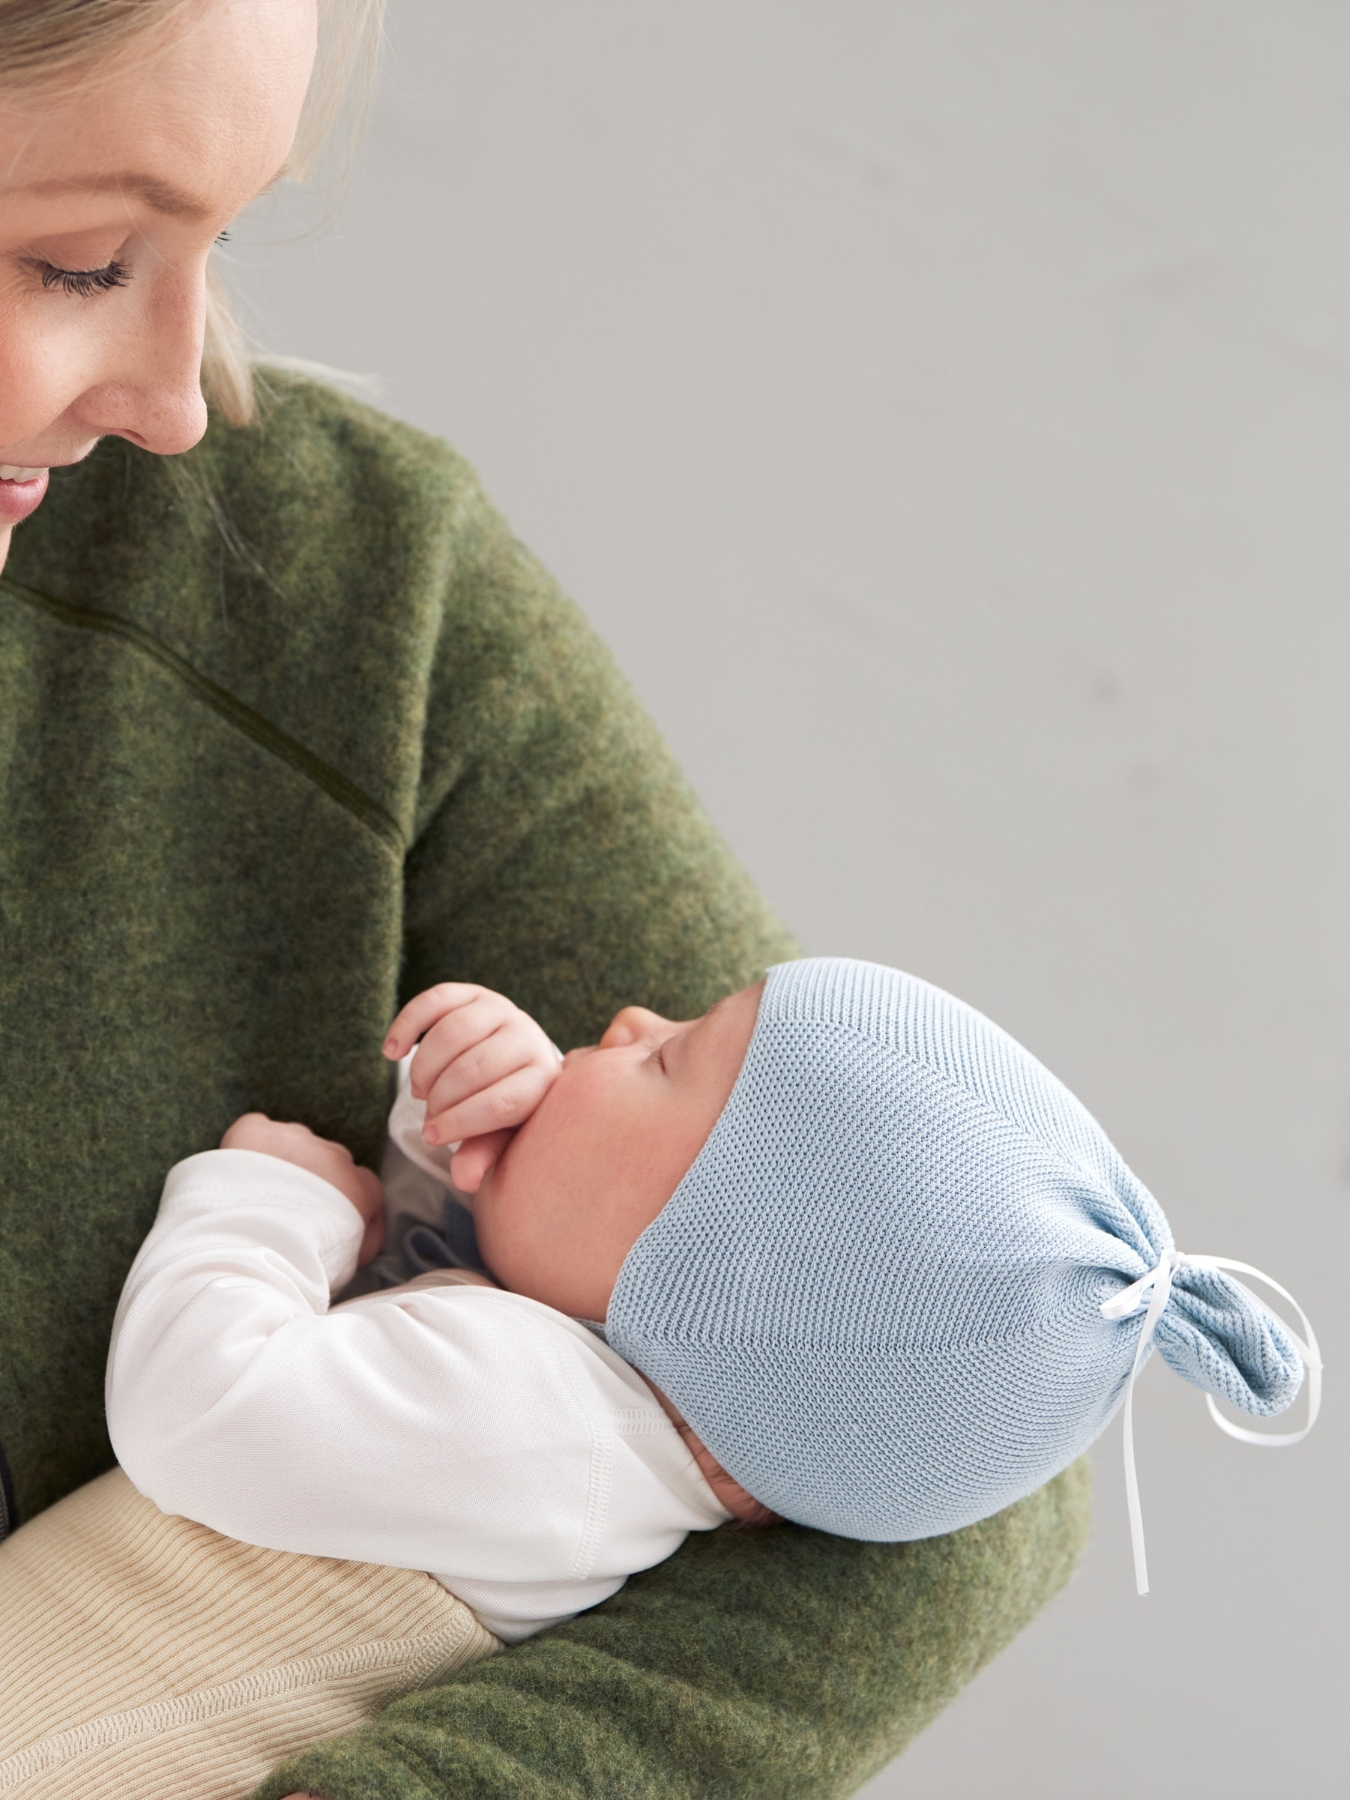 Ruskovilla's light blue silk bonnet for babies